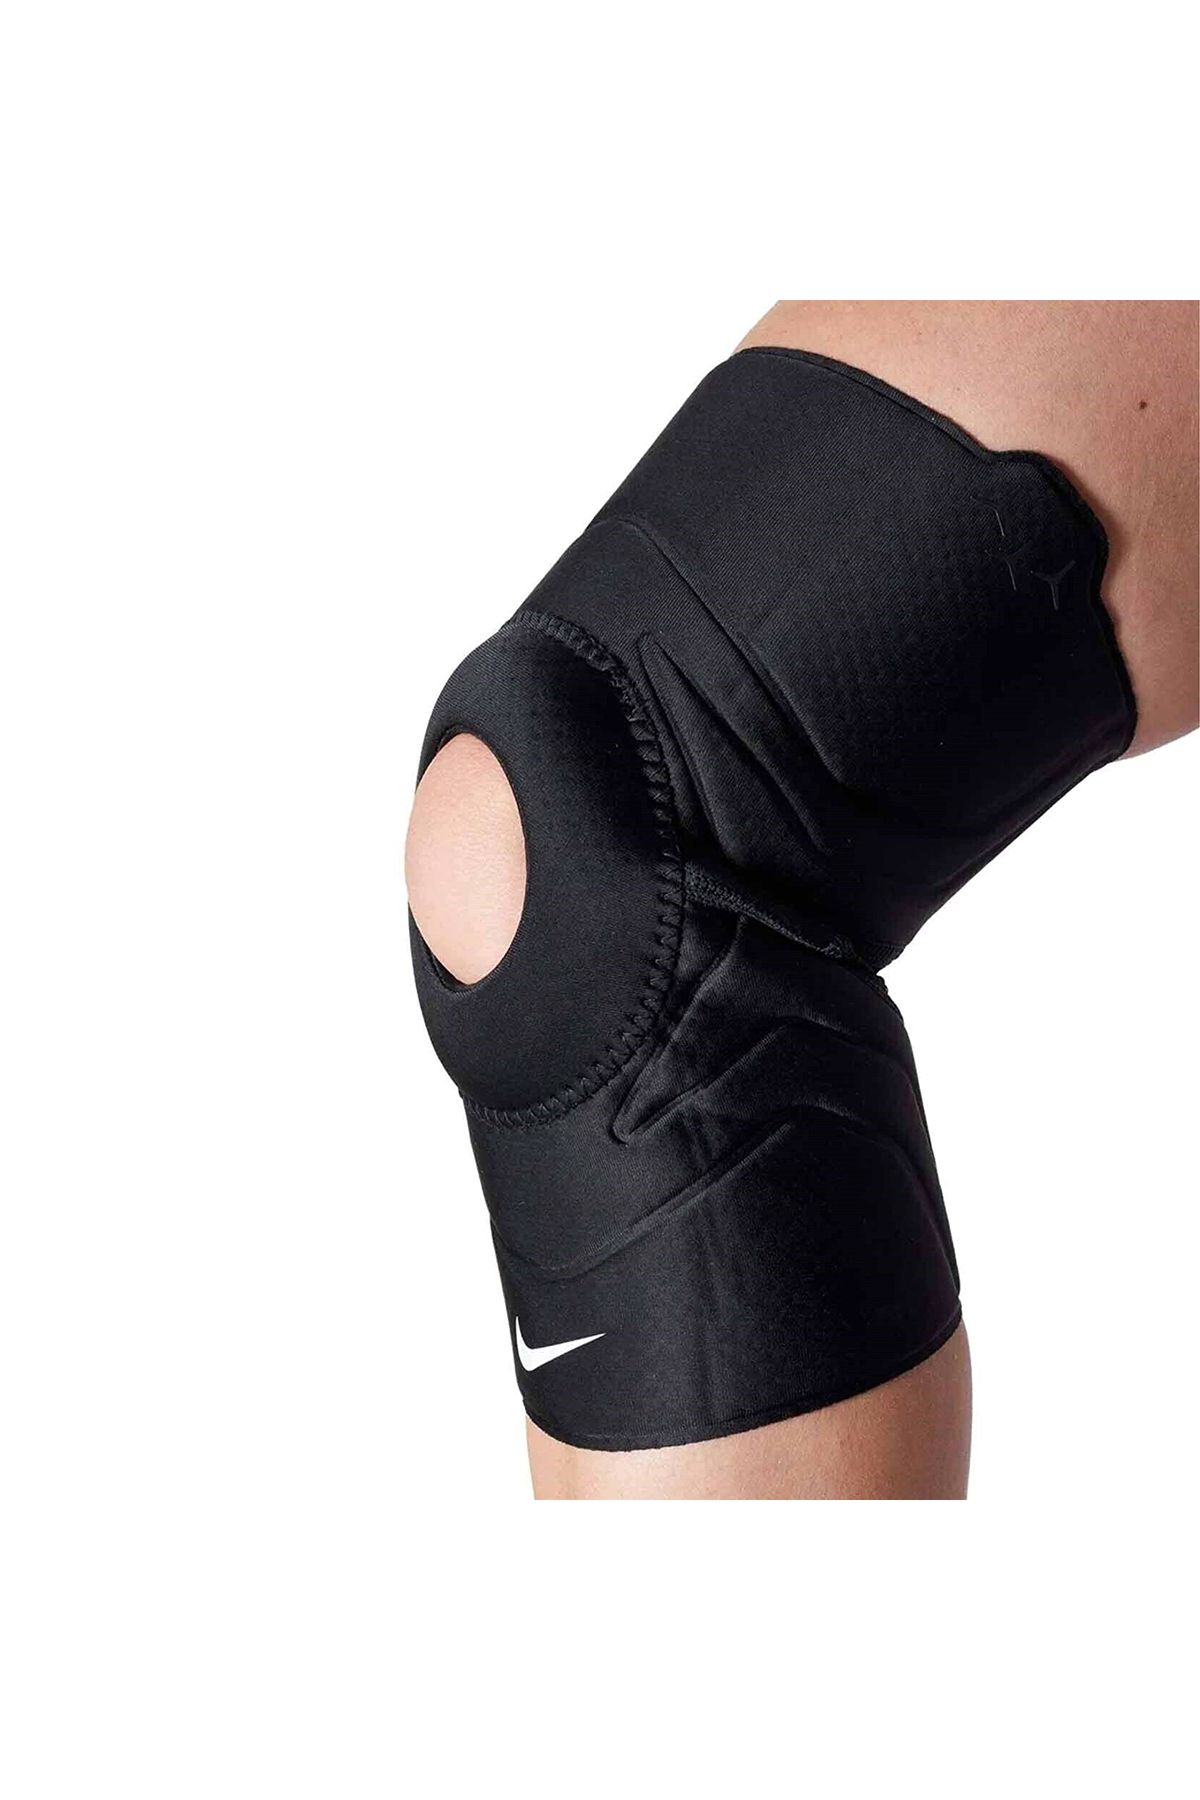 Nike Pro Open Patella Knee Sleeve 3.0 Unisex Antrenman Dizlik N.100.0675.010.XS